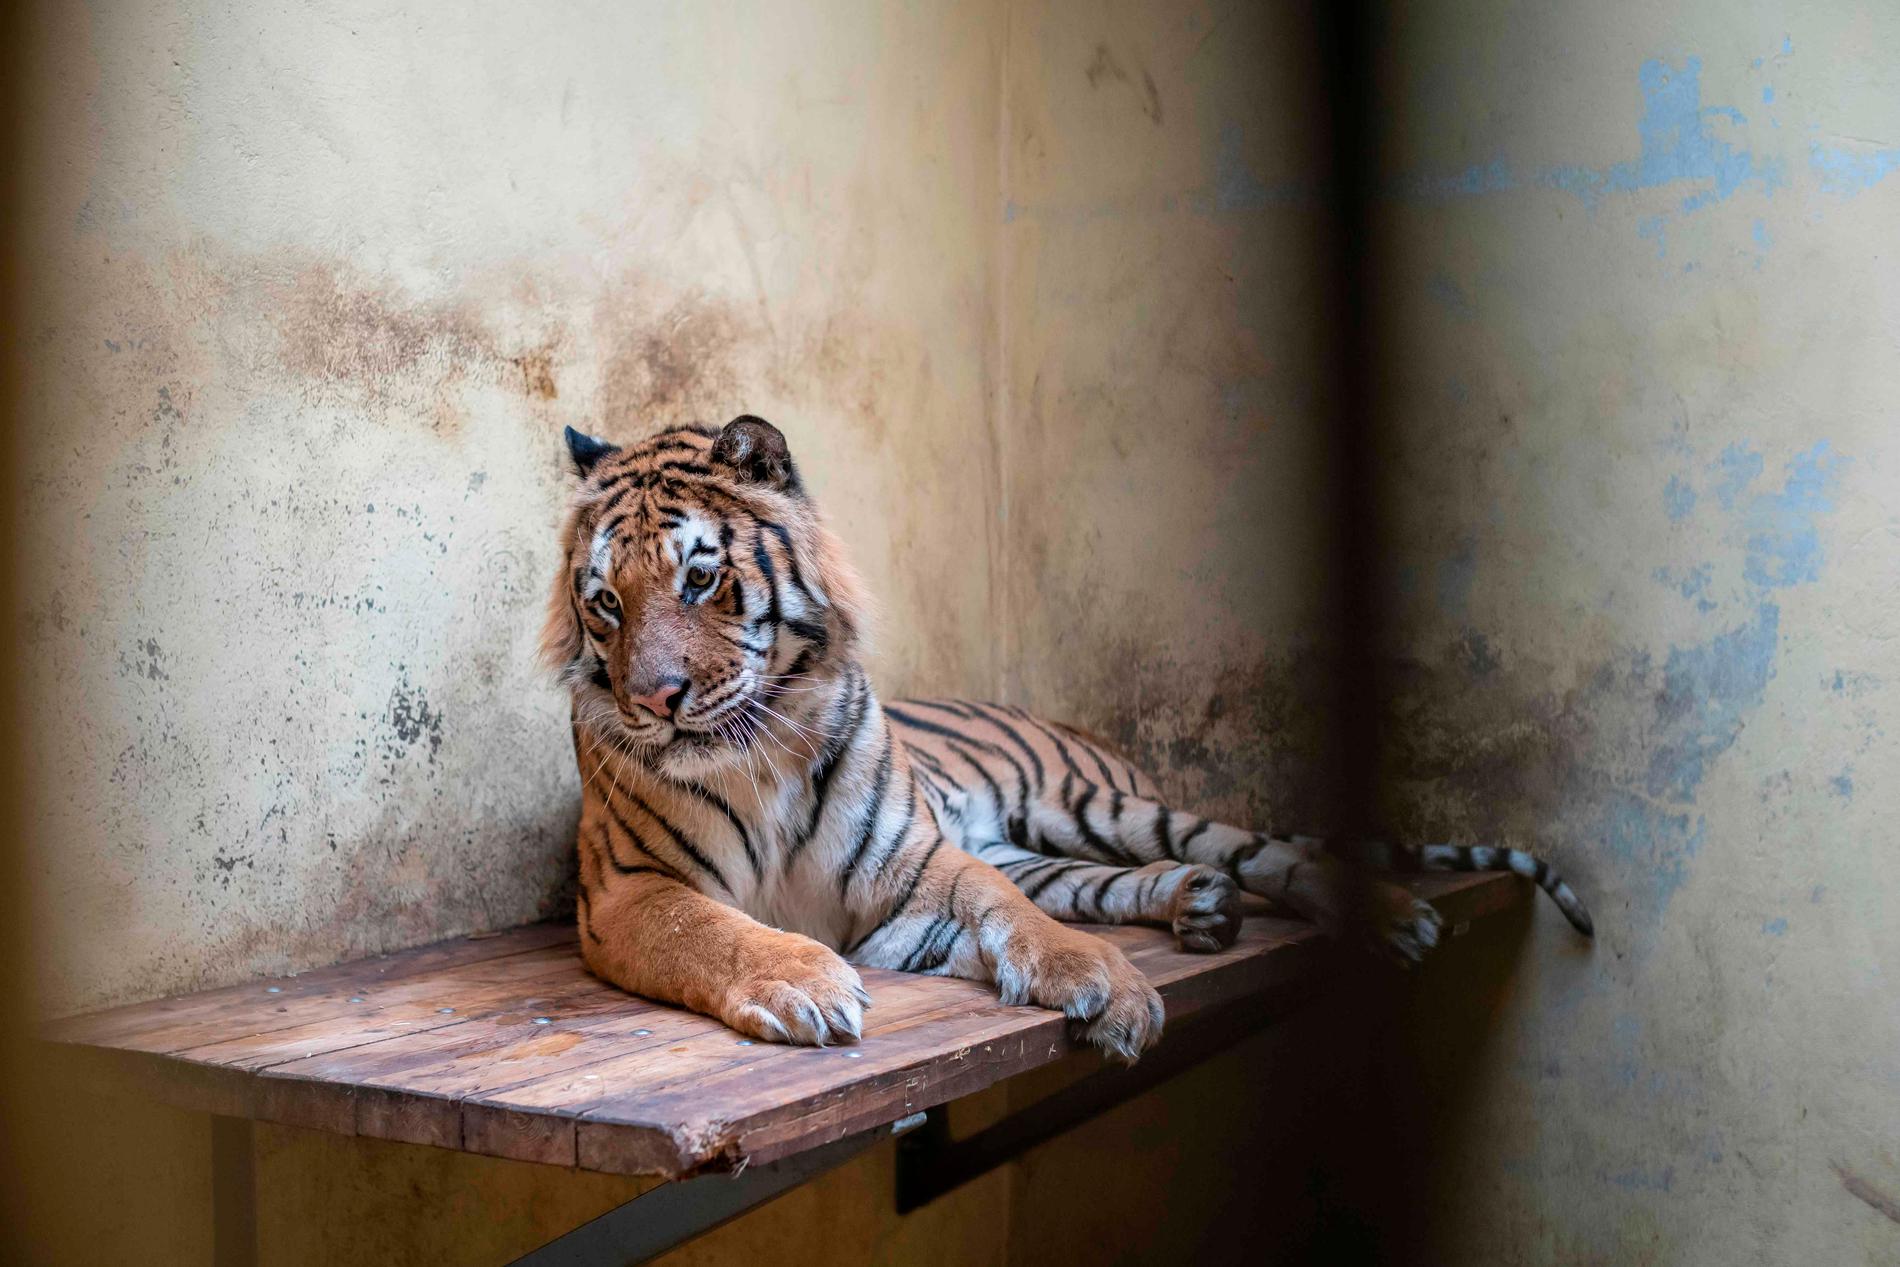 En av de tigrar som hittades i en lastbil vid gränsen mellan Polen och Vitryssland. Tigrarna befinner sig nu i en djurpark där de håller på att återhämta sig.